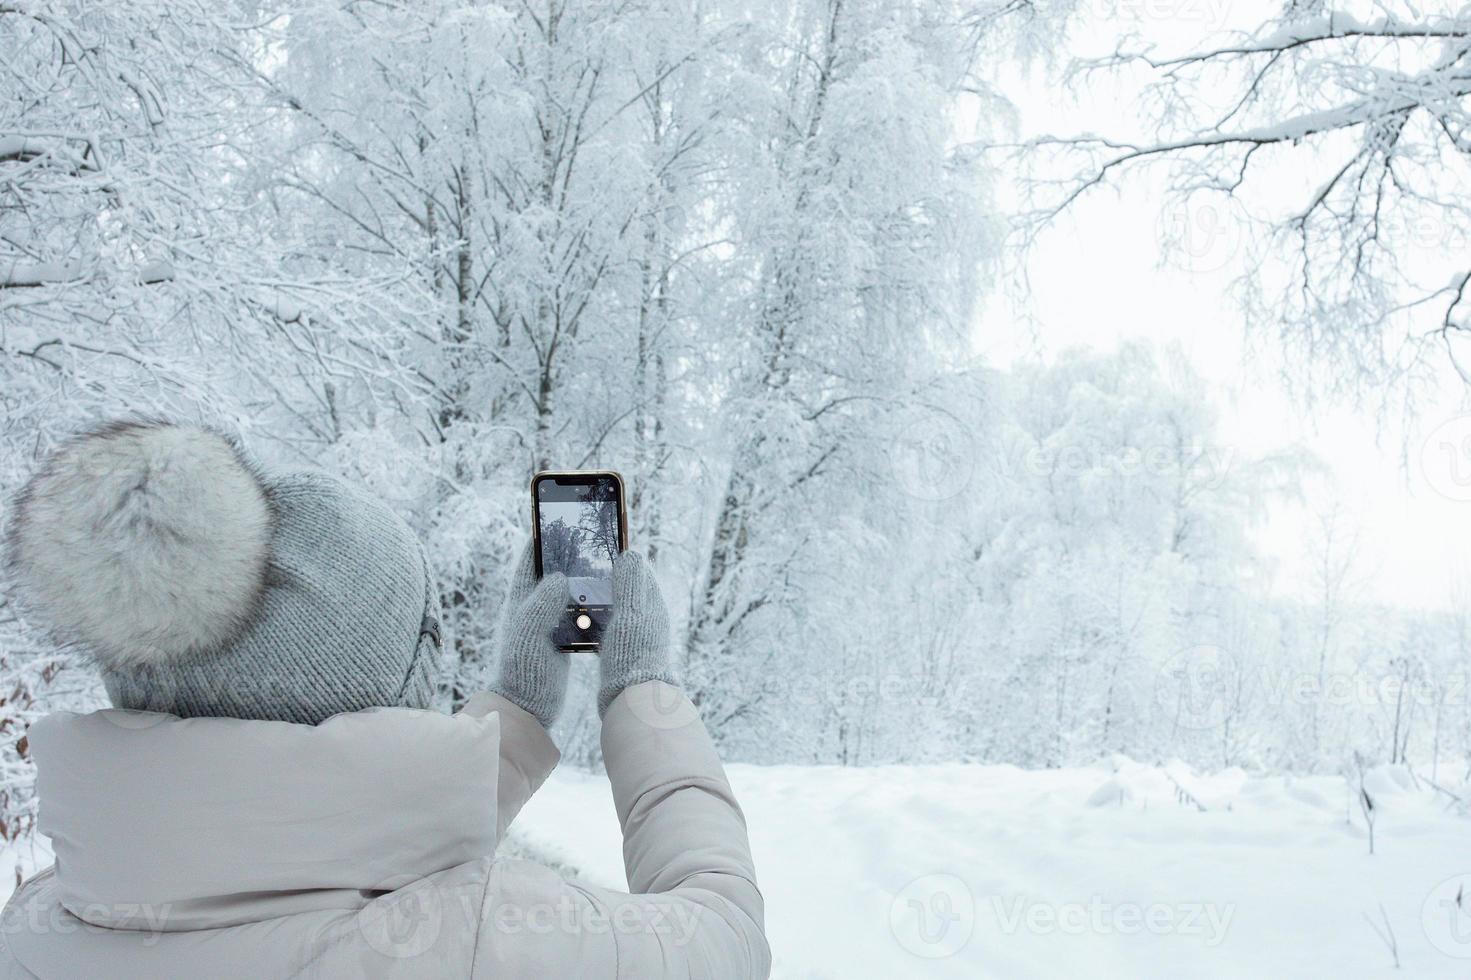 donna nel a maglia grigio cappello con pompon a partire dal dietro a assunzione paesaggio foto di inverno foresta nevicando con sua smartphone